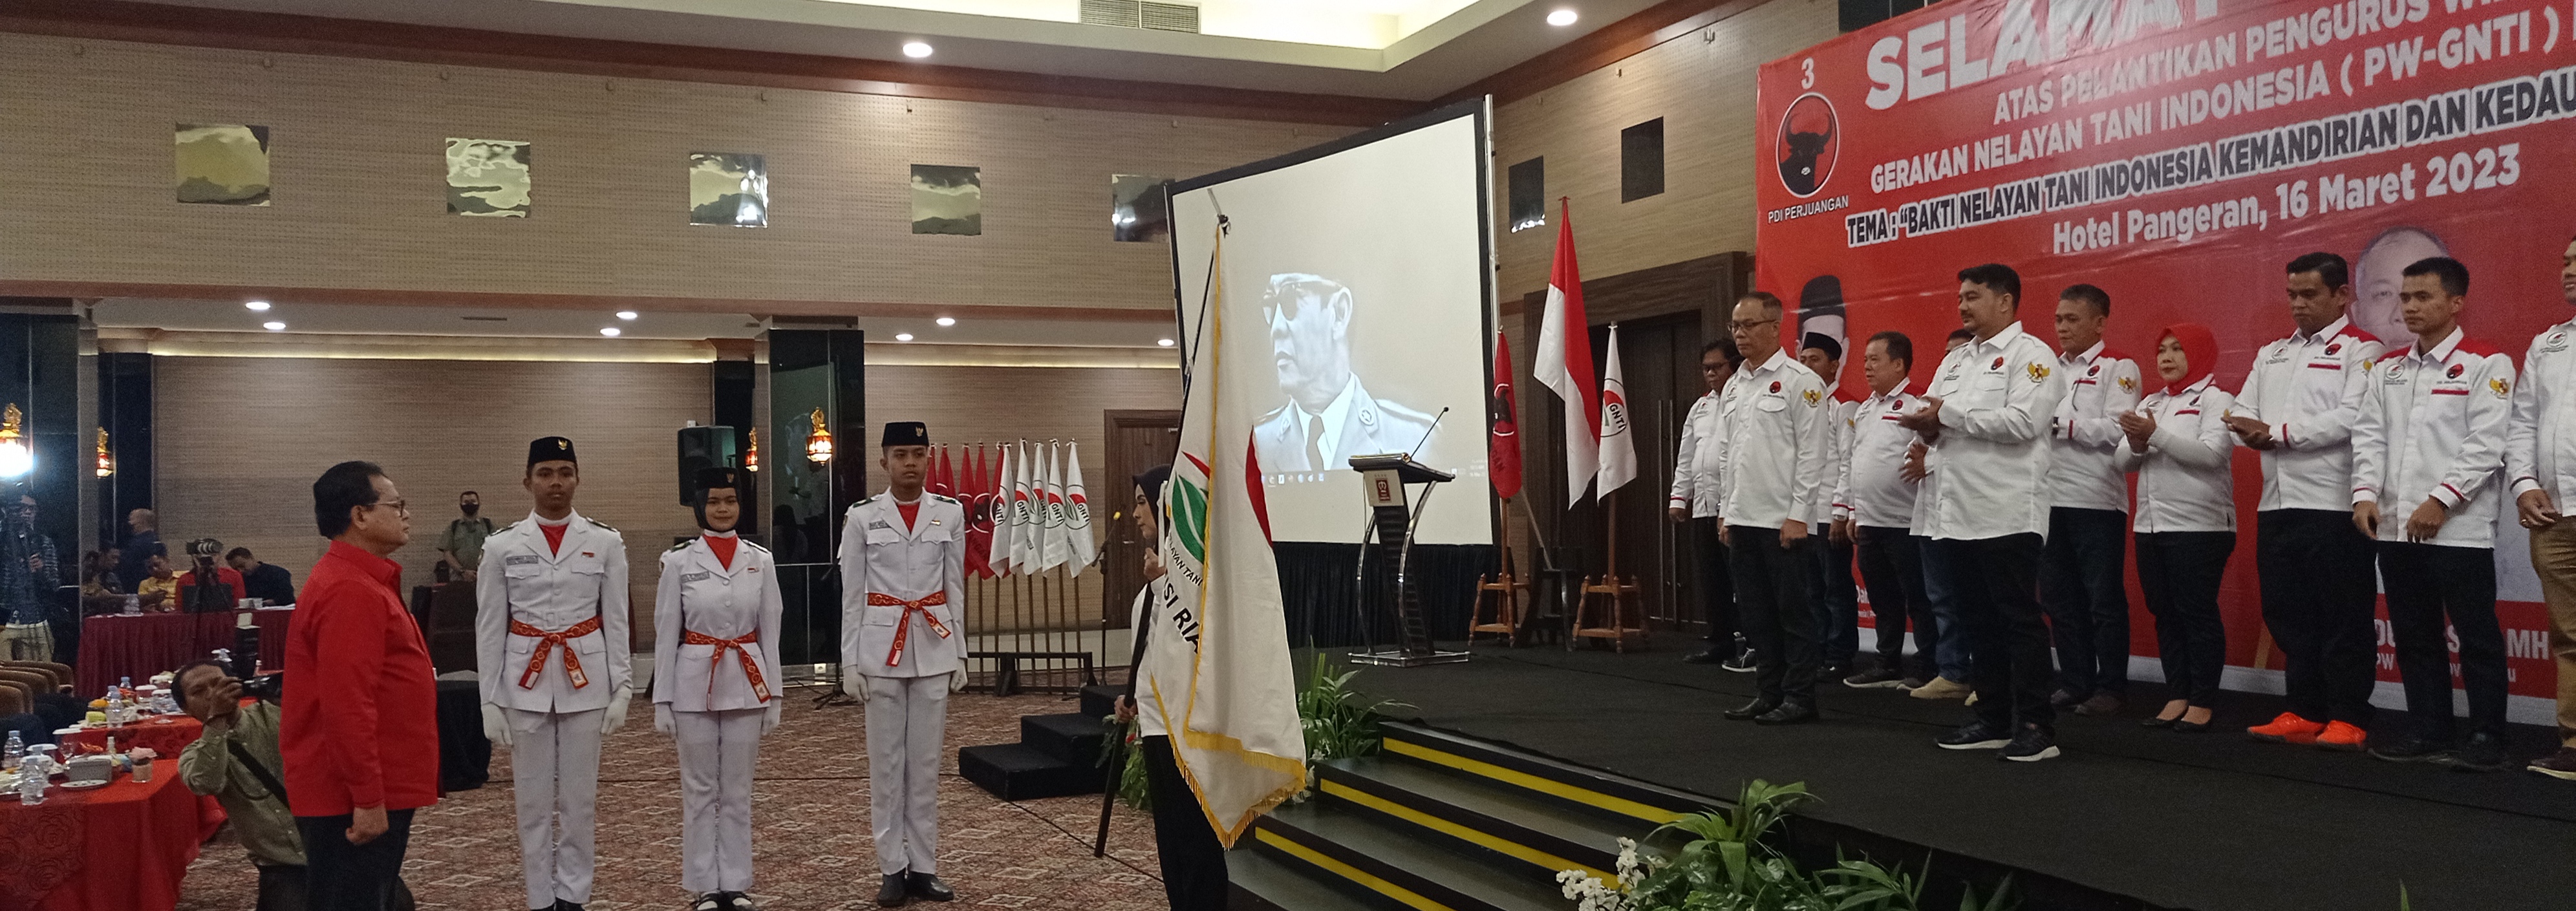 PW GNTI Riau Resmi Dilantik Prof Rokhmin Dahuri